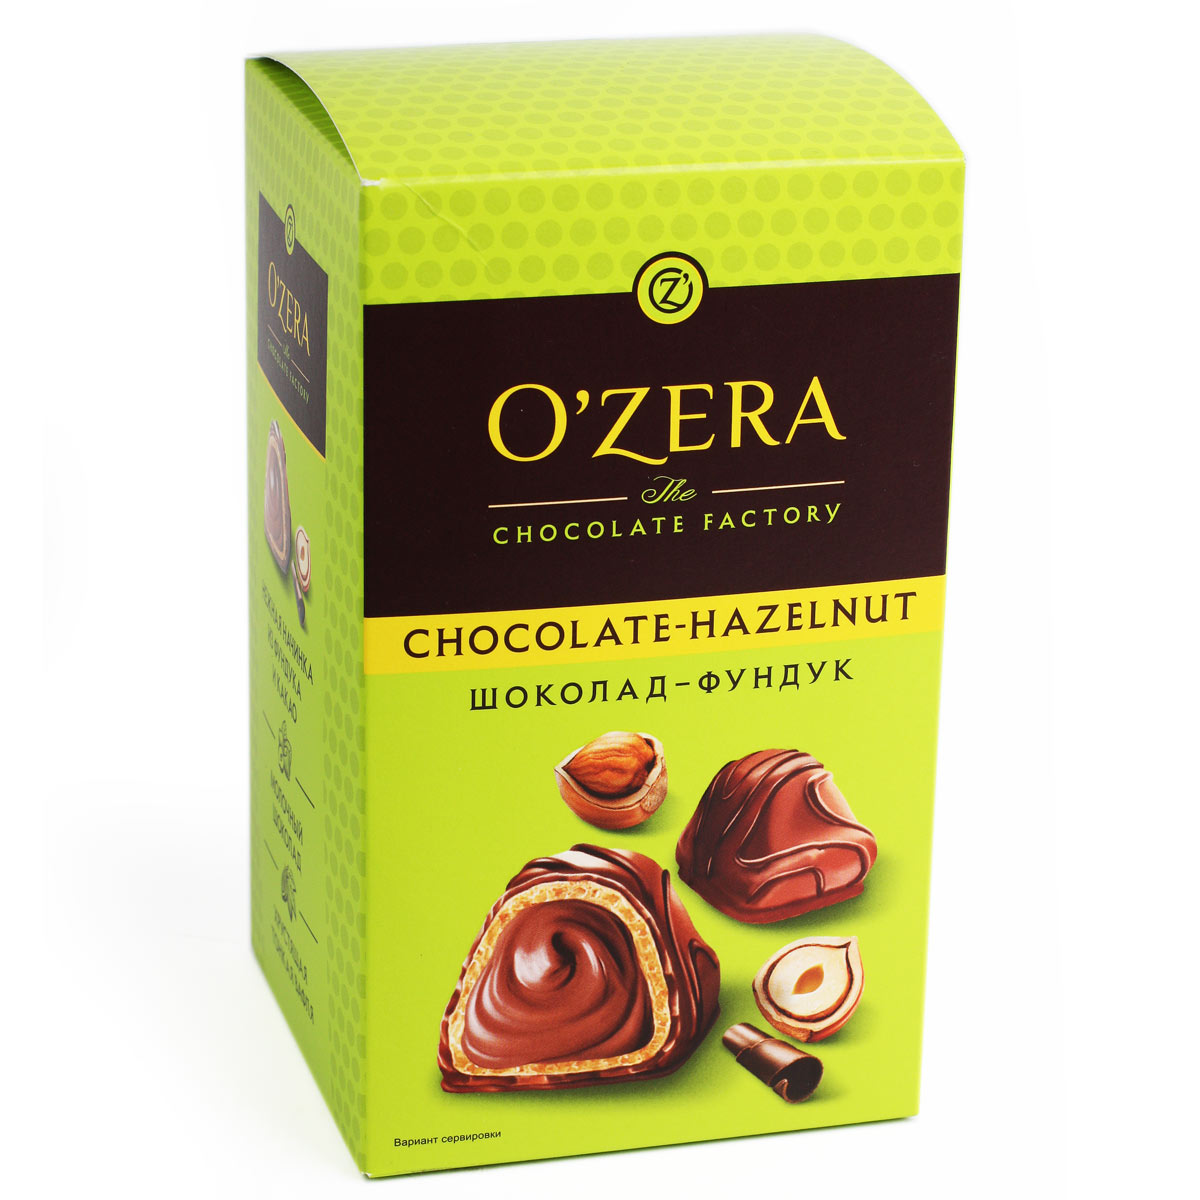 O'ZERA конфеты Озера шоколад-фундук вафельные с ореховой начинкой 150г